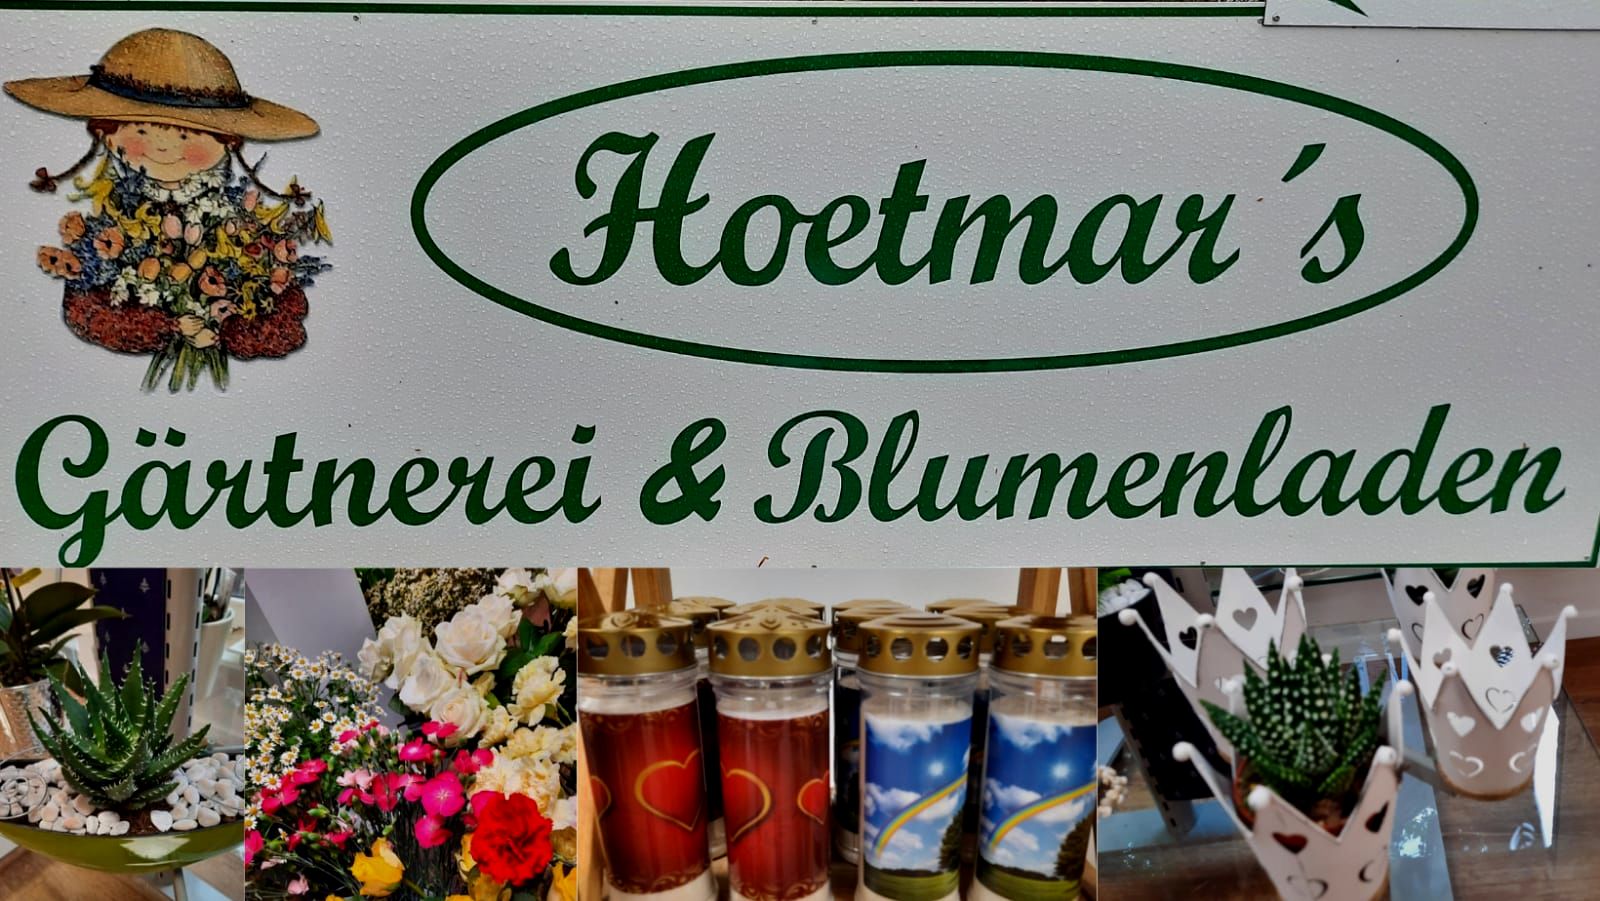 Gärtnerei & Blumenhaus Hoetmar